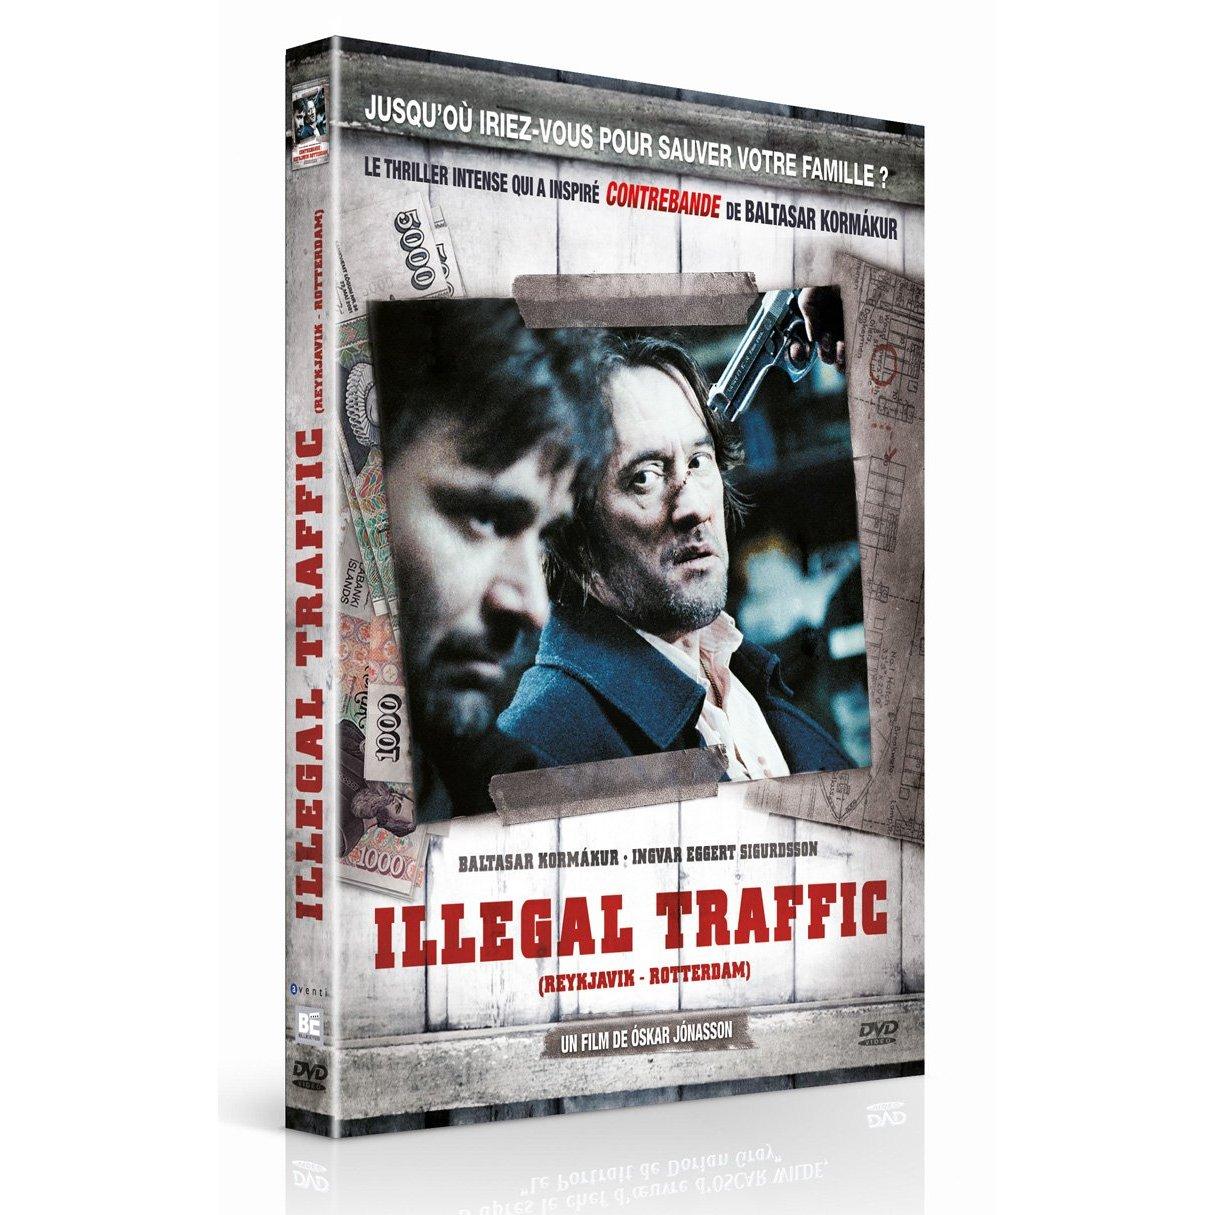 Illegal Traffic : le thriller qui a inspiré Contrebande